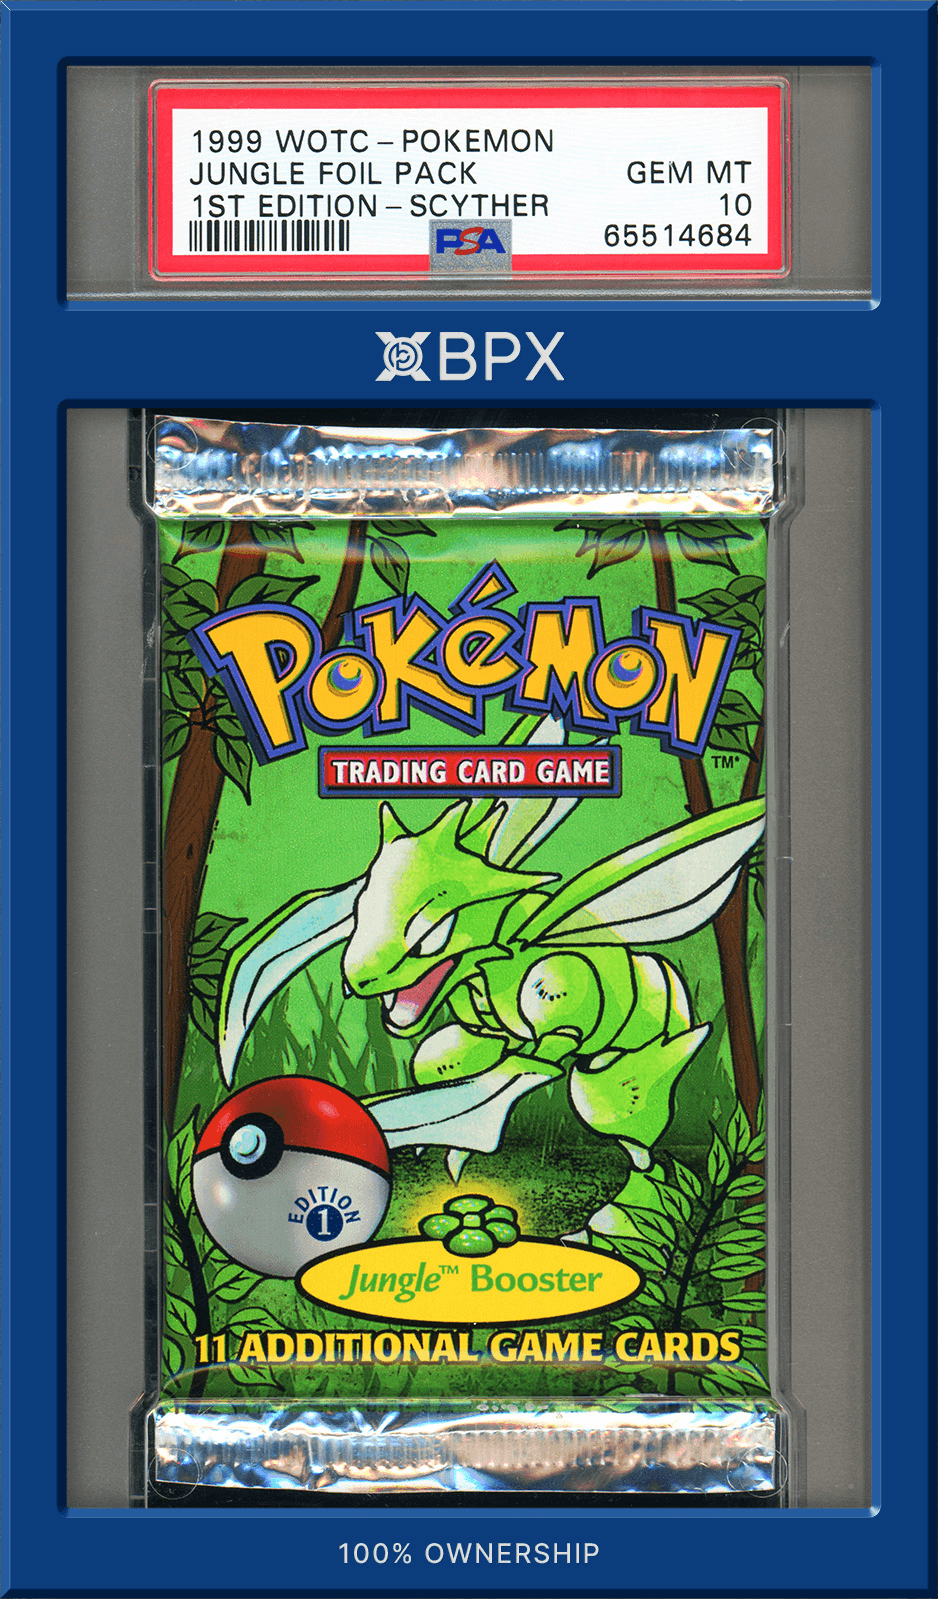 1999 Pokémon Jungle Foil Pack - PSA 10 (Cert: 65514684)